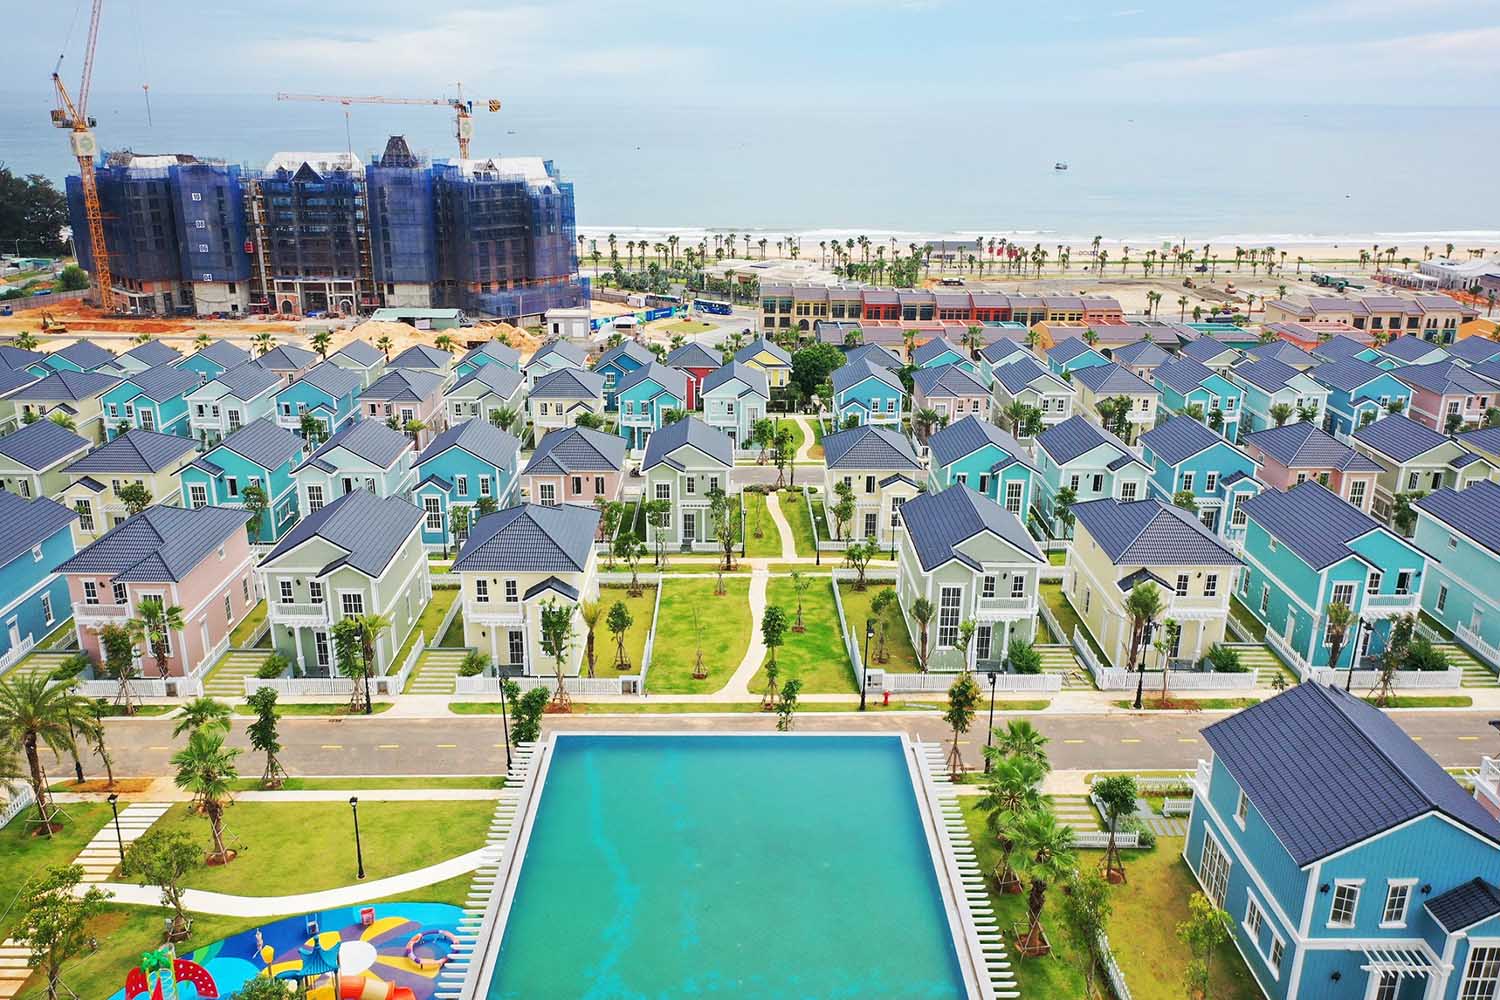 bất động sản nghỉ dưỡng Phan Thiết tiếp tục là lựa chọn được nhà đầu tư ưu ái trong mùa cao điểm cuối năm. Hình ảnh thực tế tại Dự án NovaWorld Phan Thiet quy mô 1.000 ha tháng 11/2021